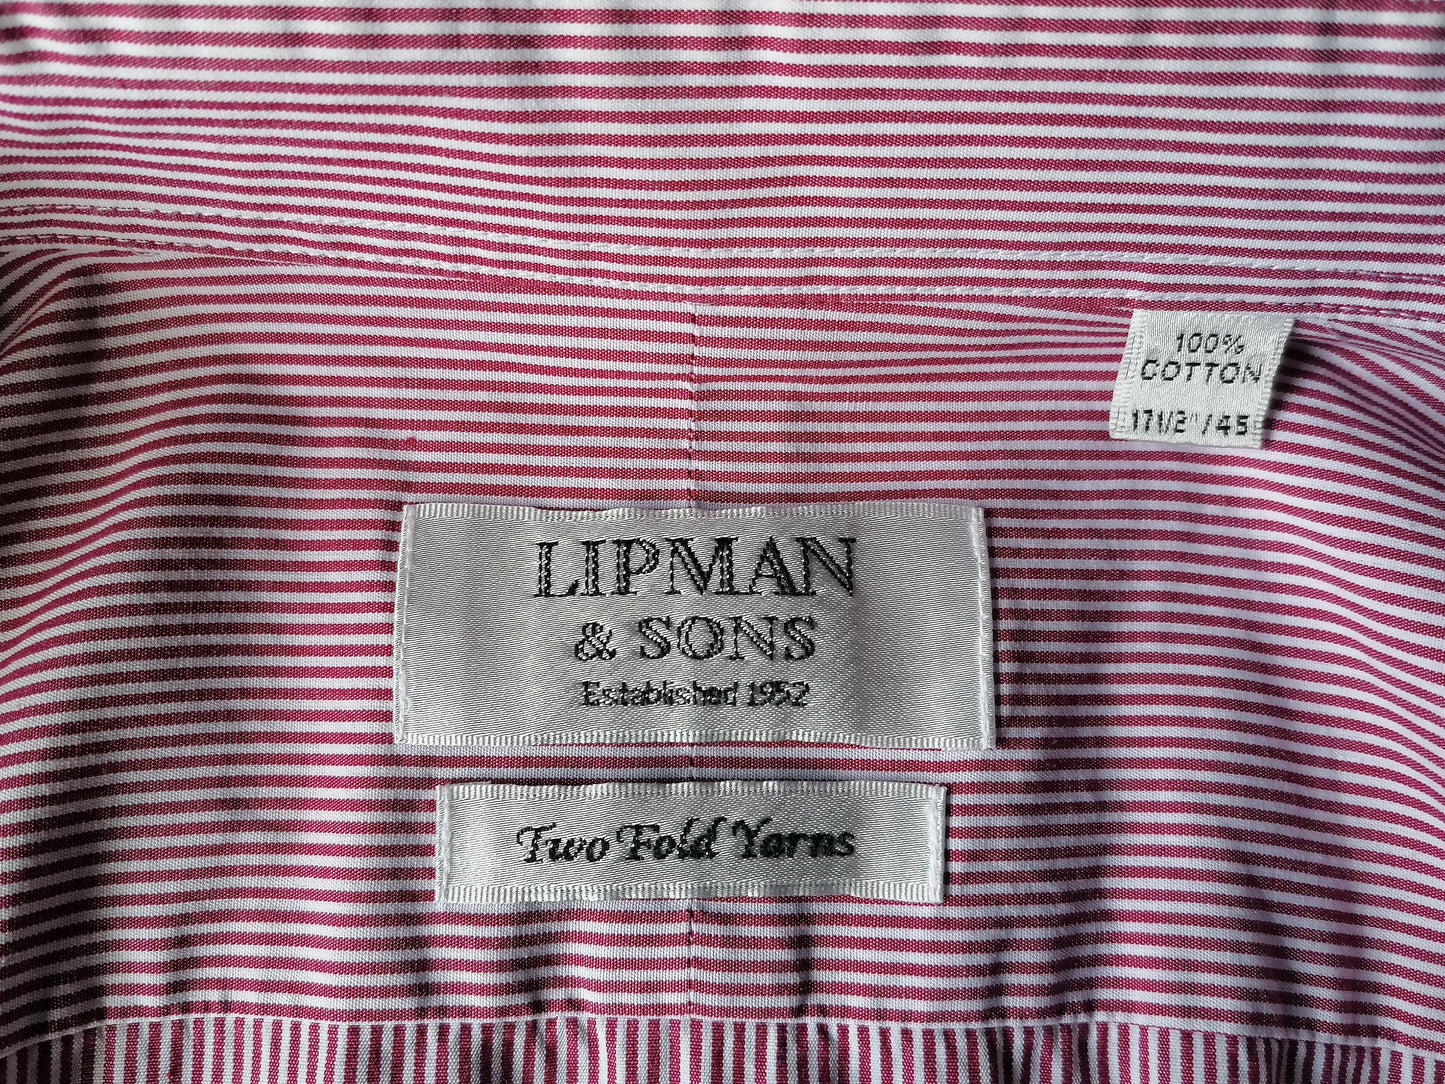 Chemise Lipman & Sons. Blanc rouge rayé. Taille 45 / xxl / 2xl. Type de nœud manchette. "Deux fils de pli".